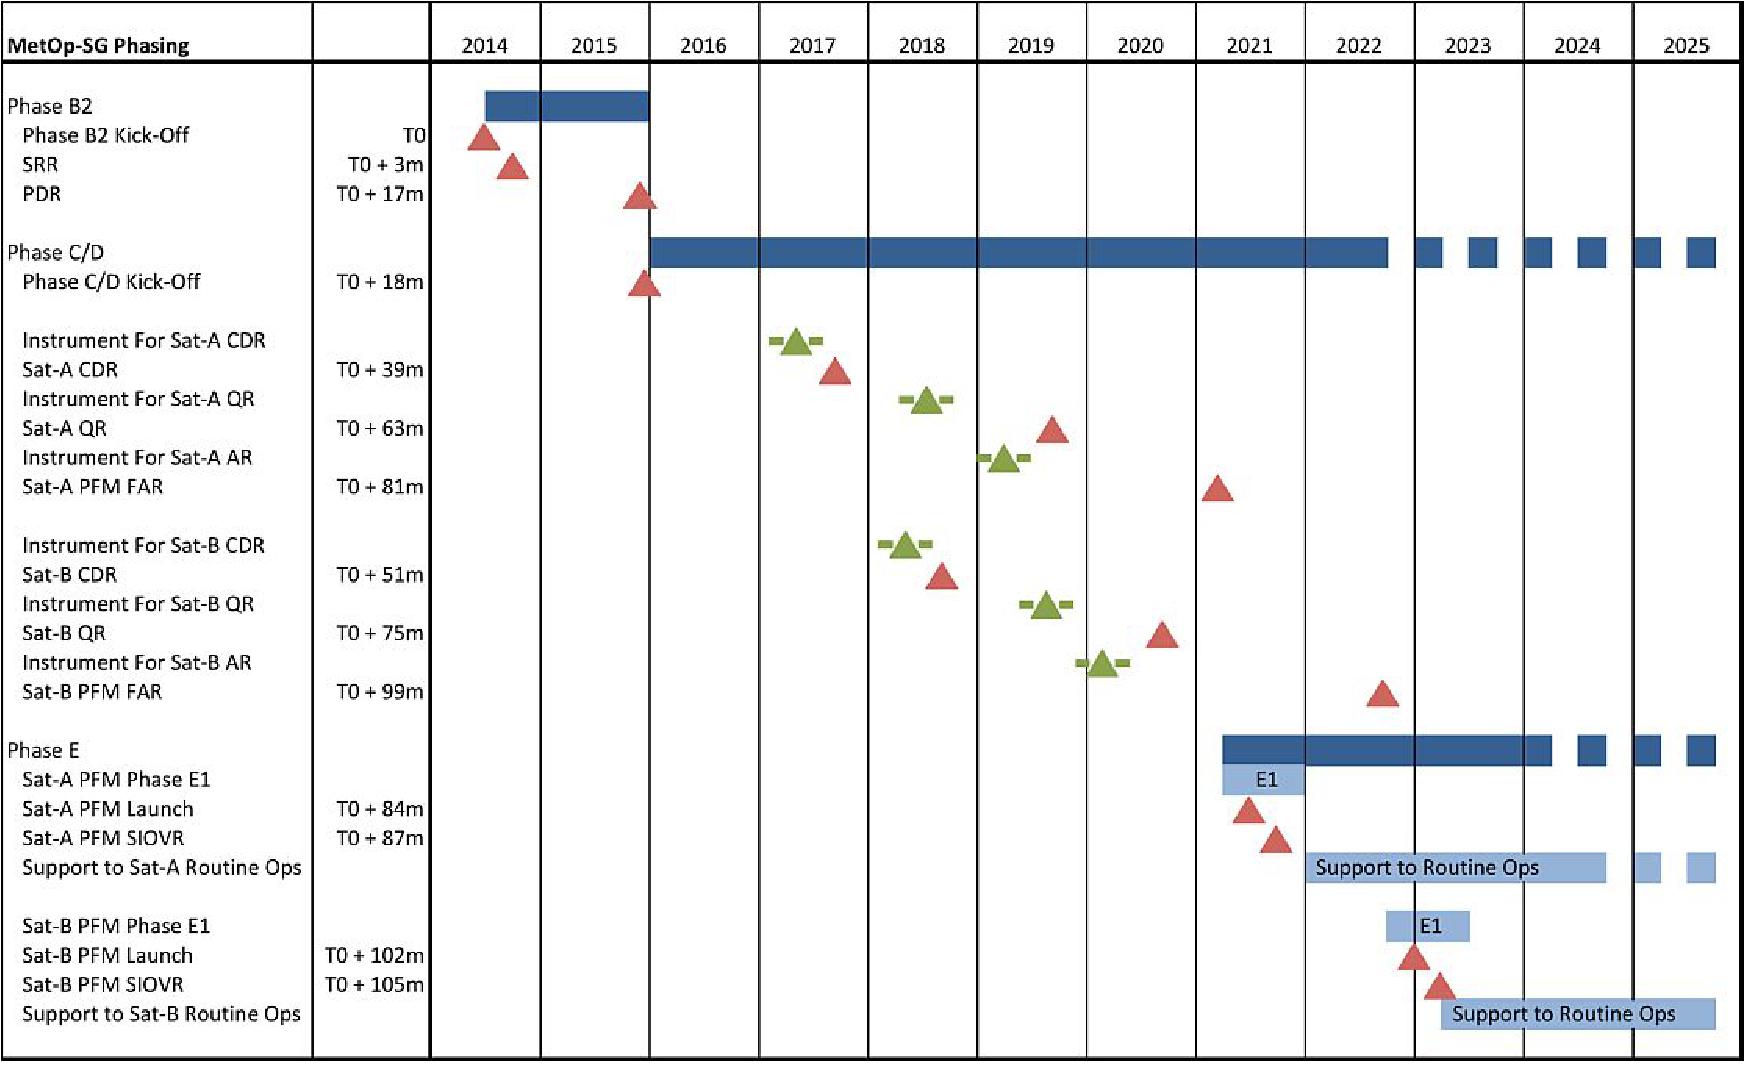 Figure 10: Overall MetOp-SG schedule (Ref. 11)